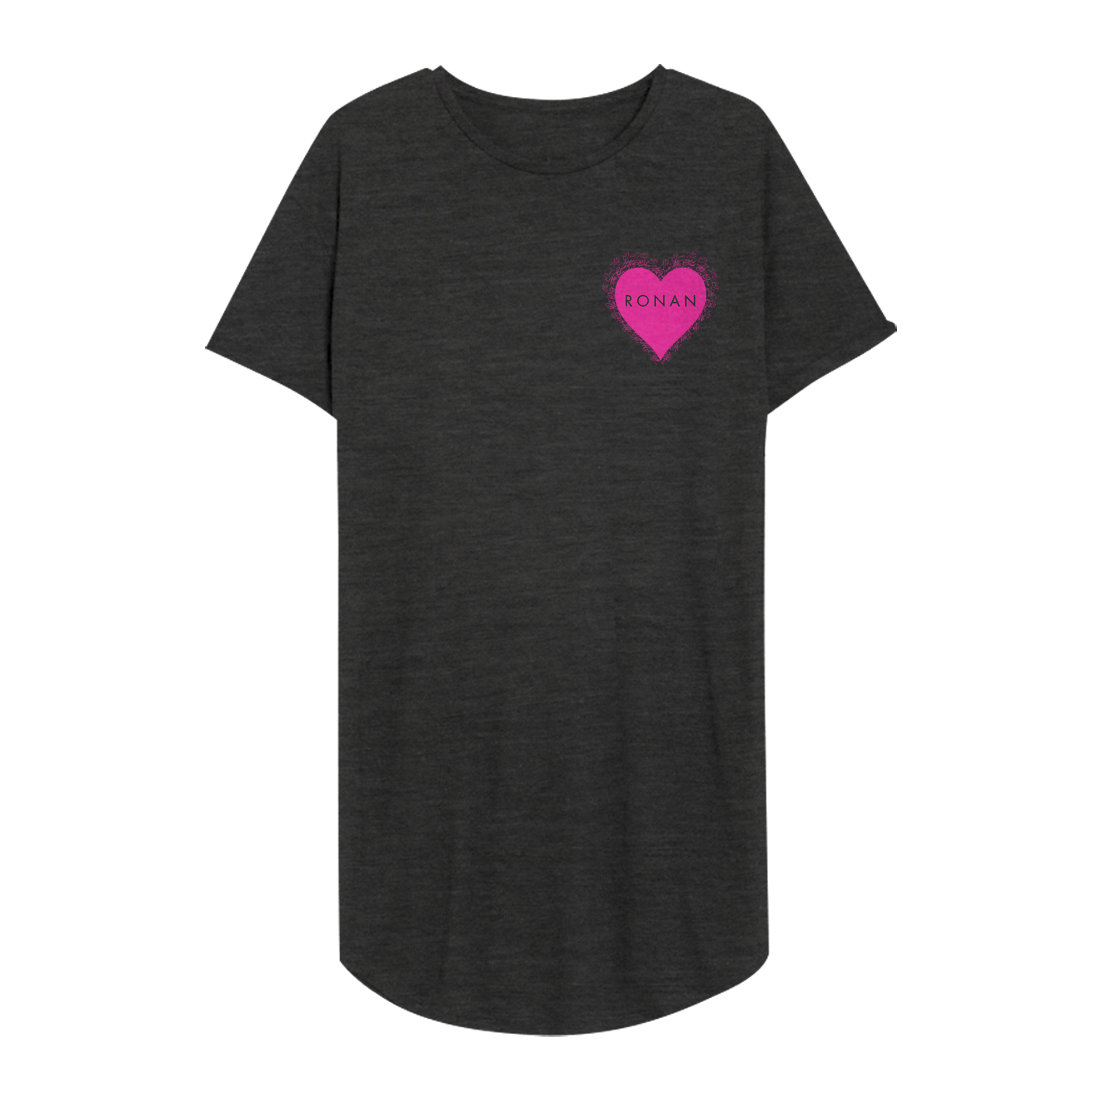 Ronan Keating - Ronan T-shirt Dress